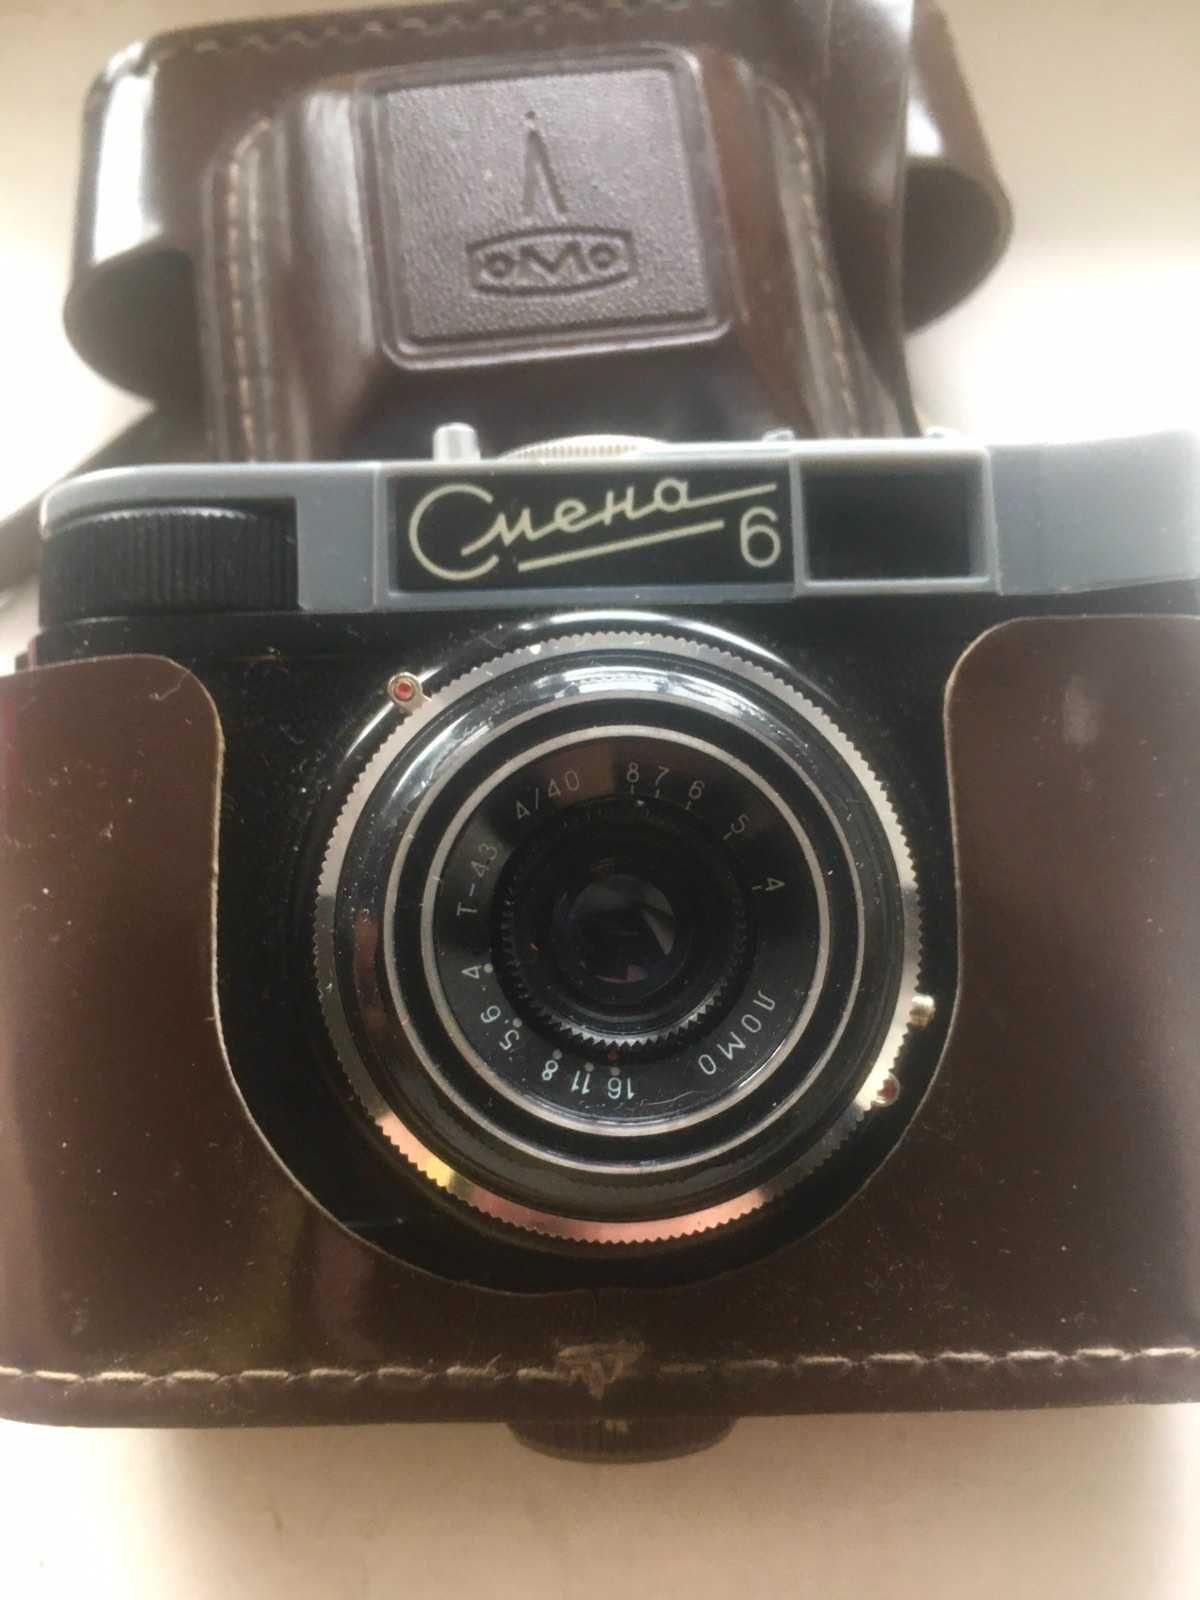 Продам винтажный пленочный фотоаппарат Ломо Смена 6 период СССР